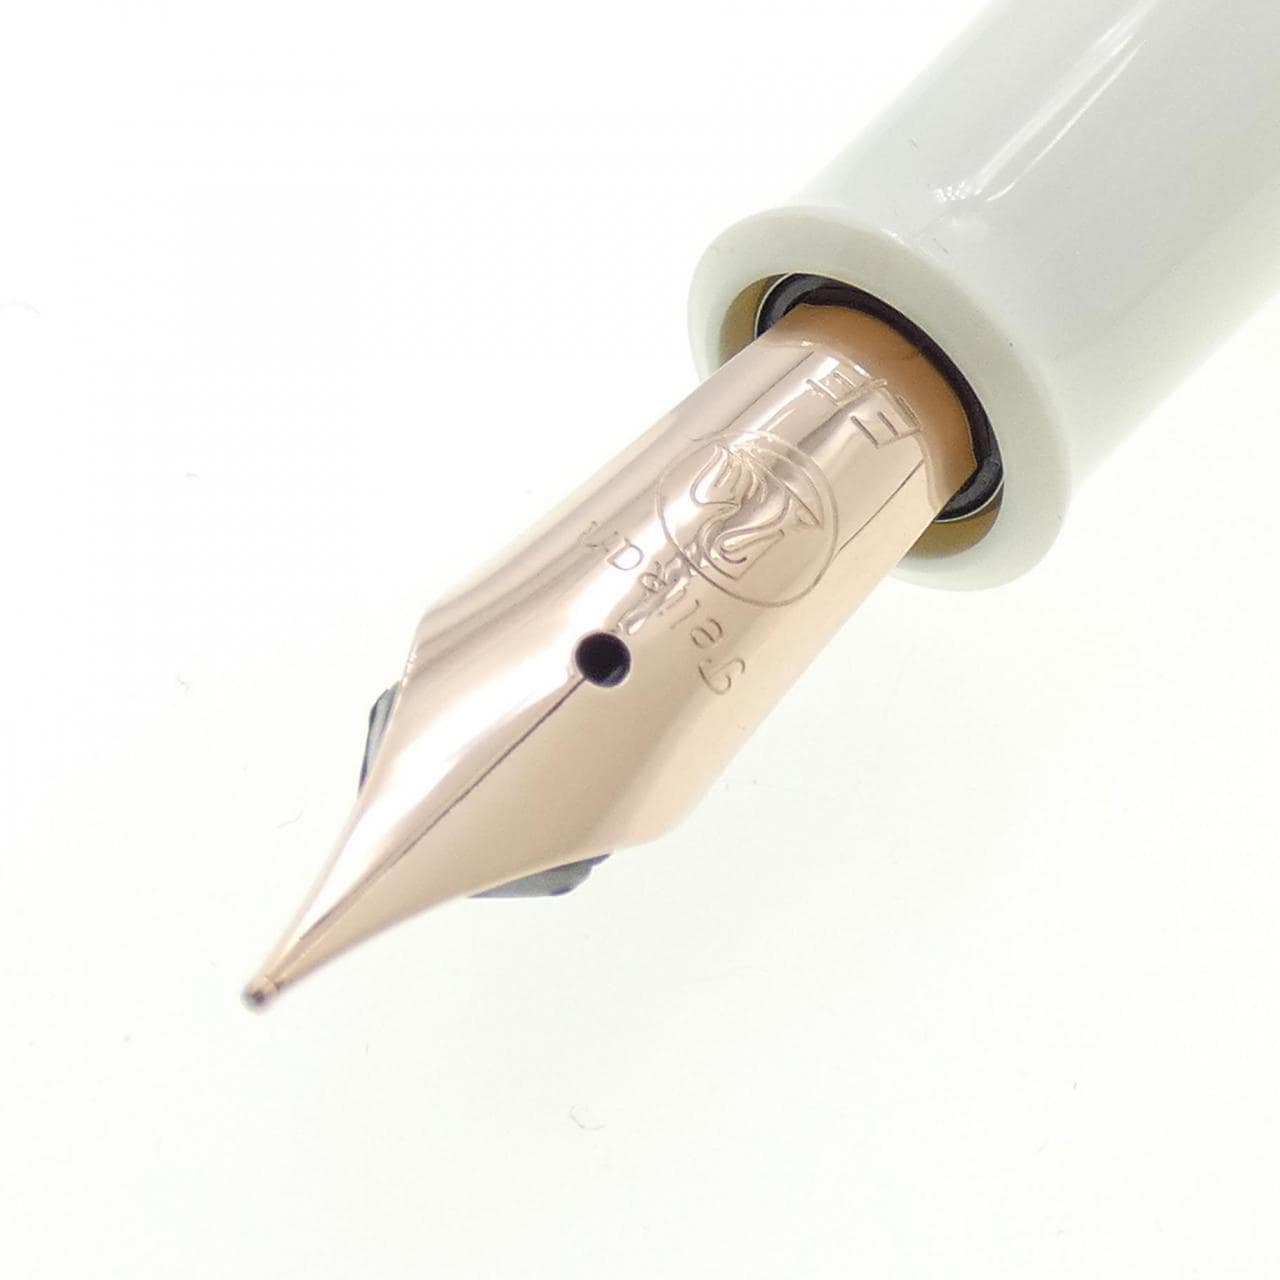 [新品] 百利金經典 M200 銅鋼筆